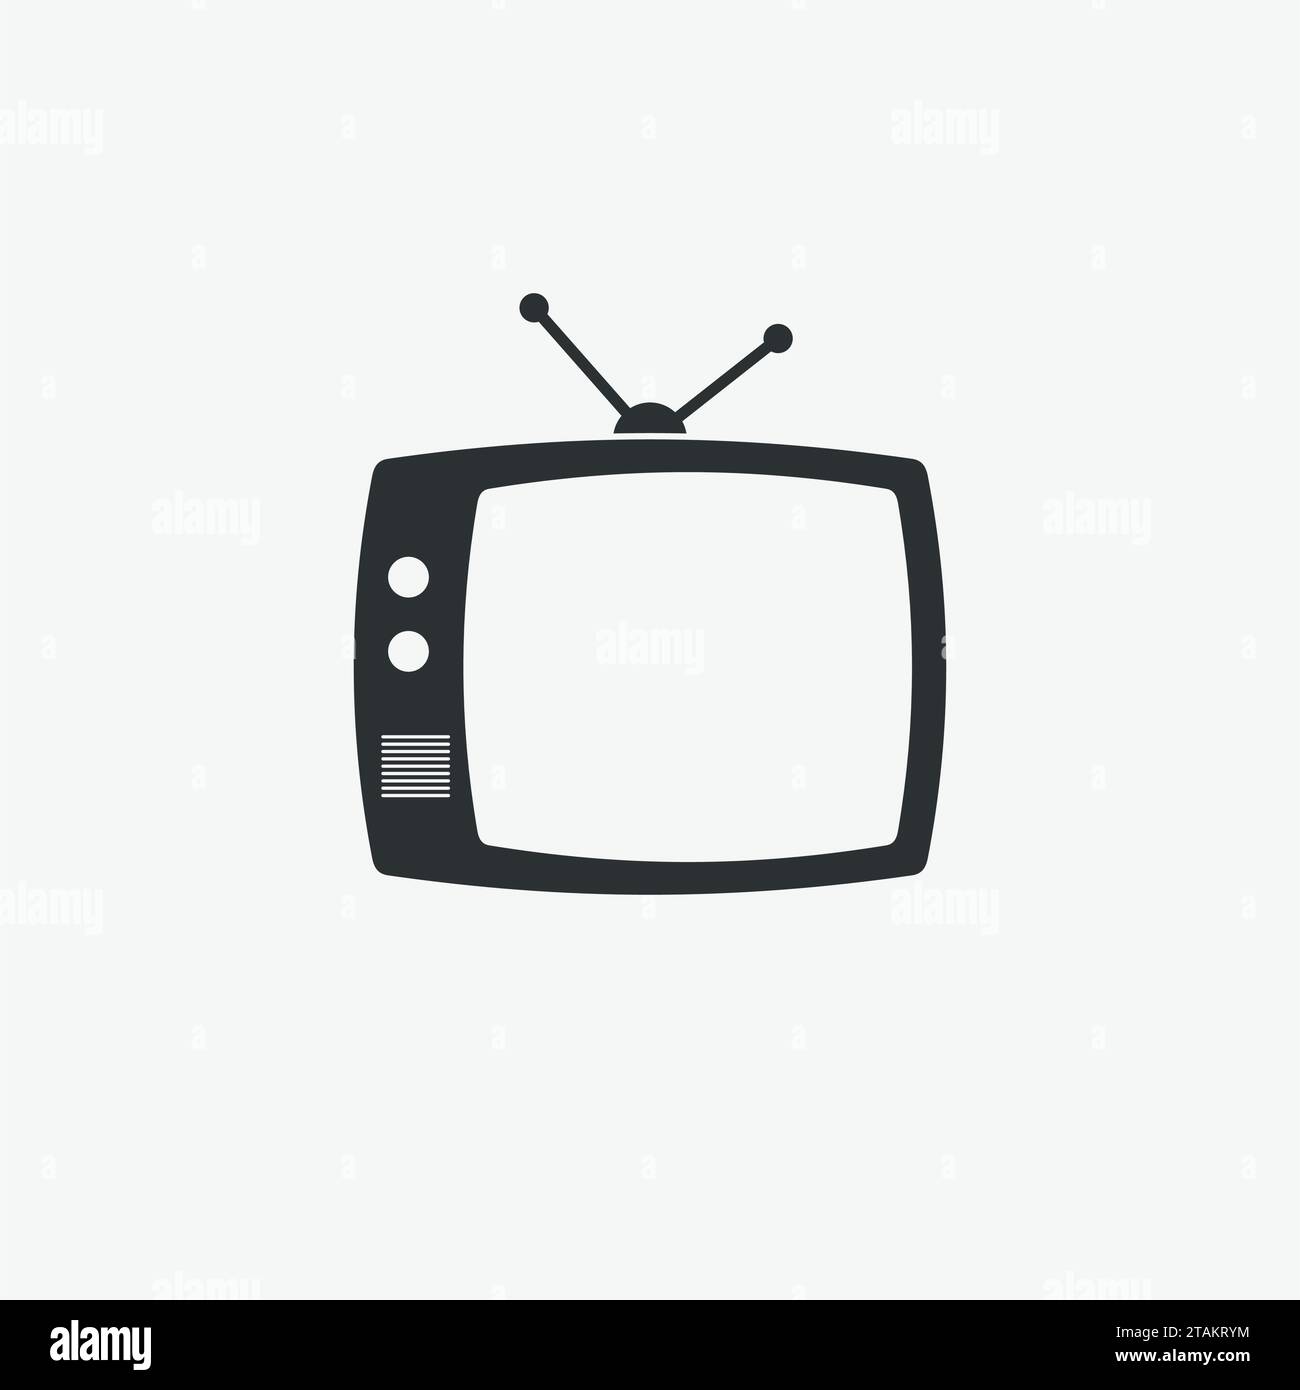 TV-Symbol auf grauem Hintergrund isoliert. TV-Symbol flacher Stil. Vektorgrafik des schwarzen TV-Symbols Stock Vektor